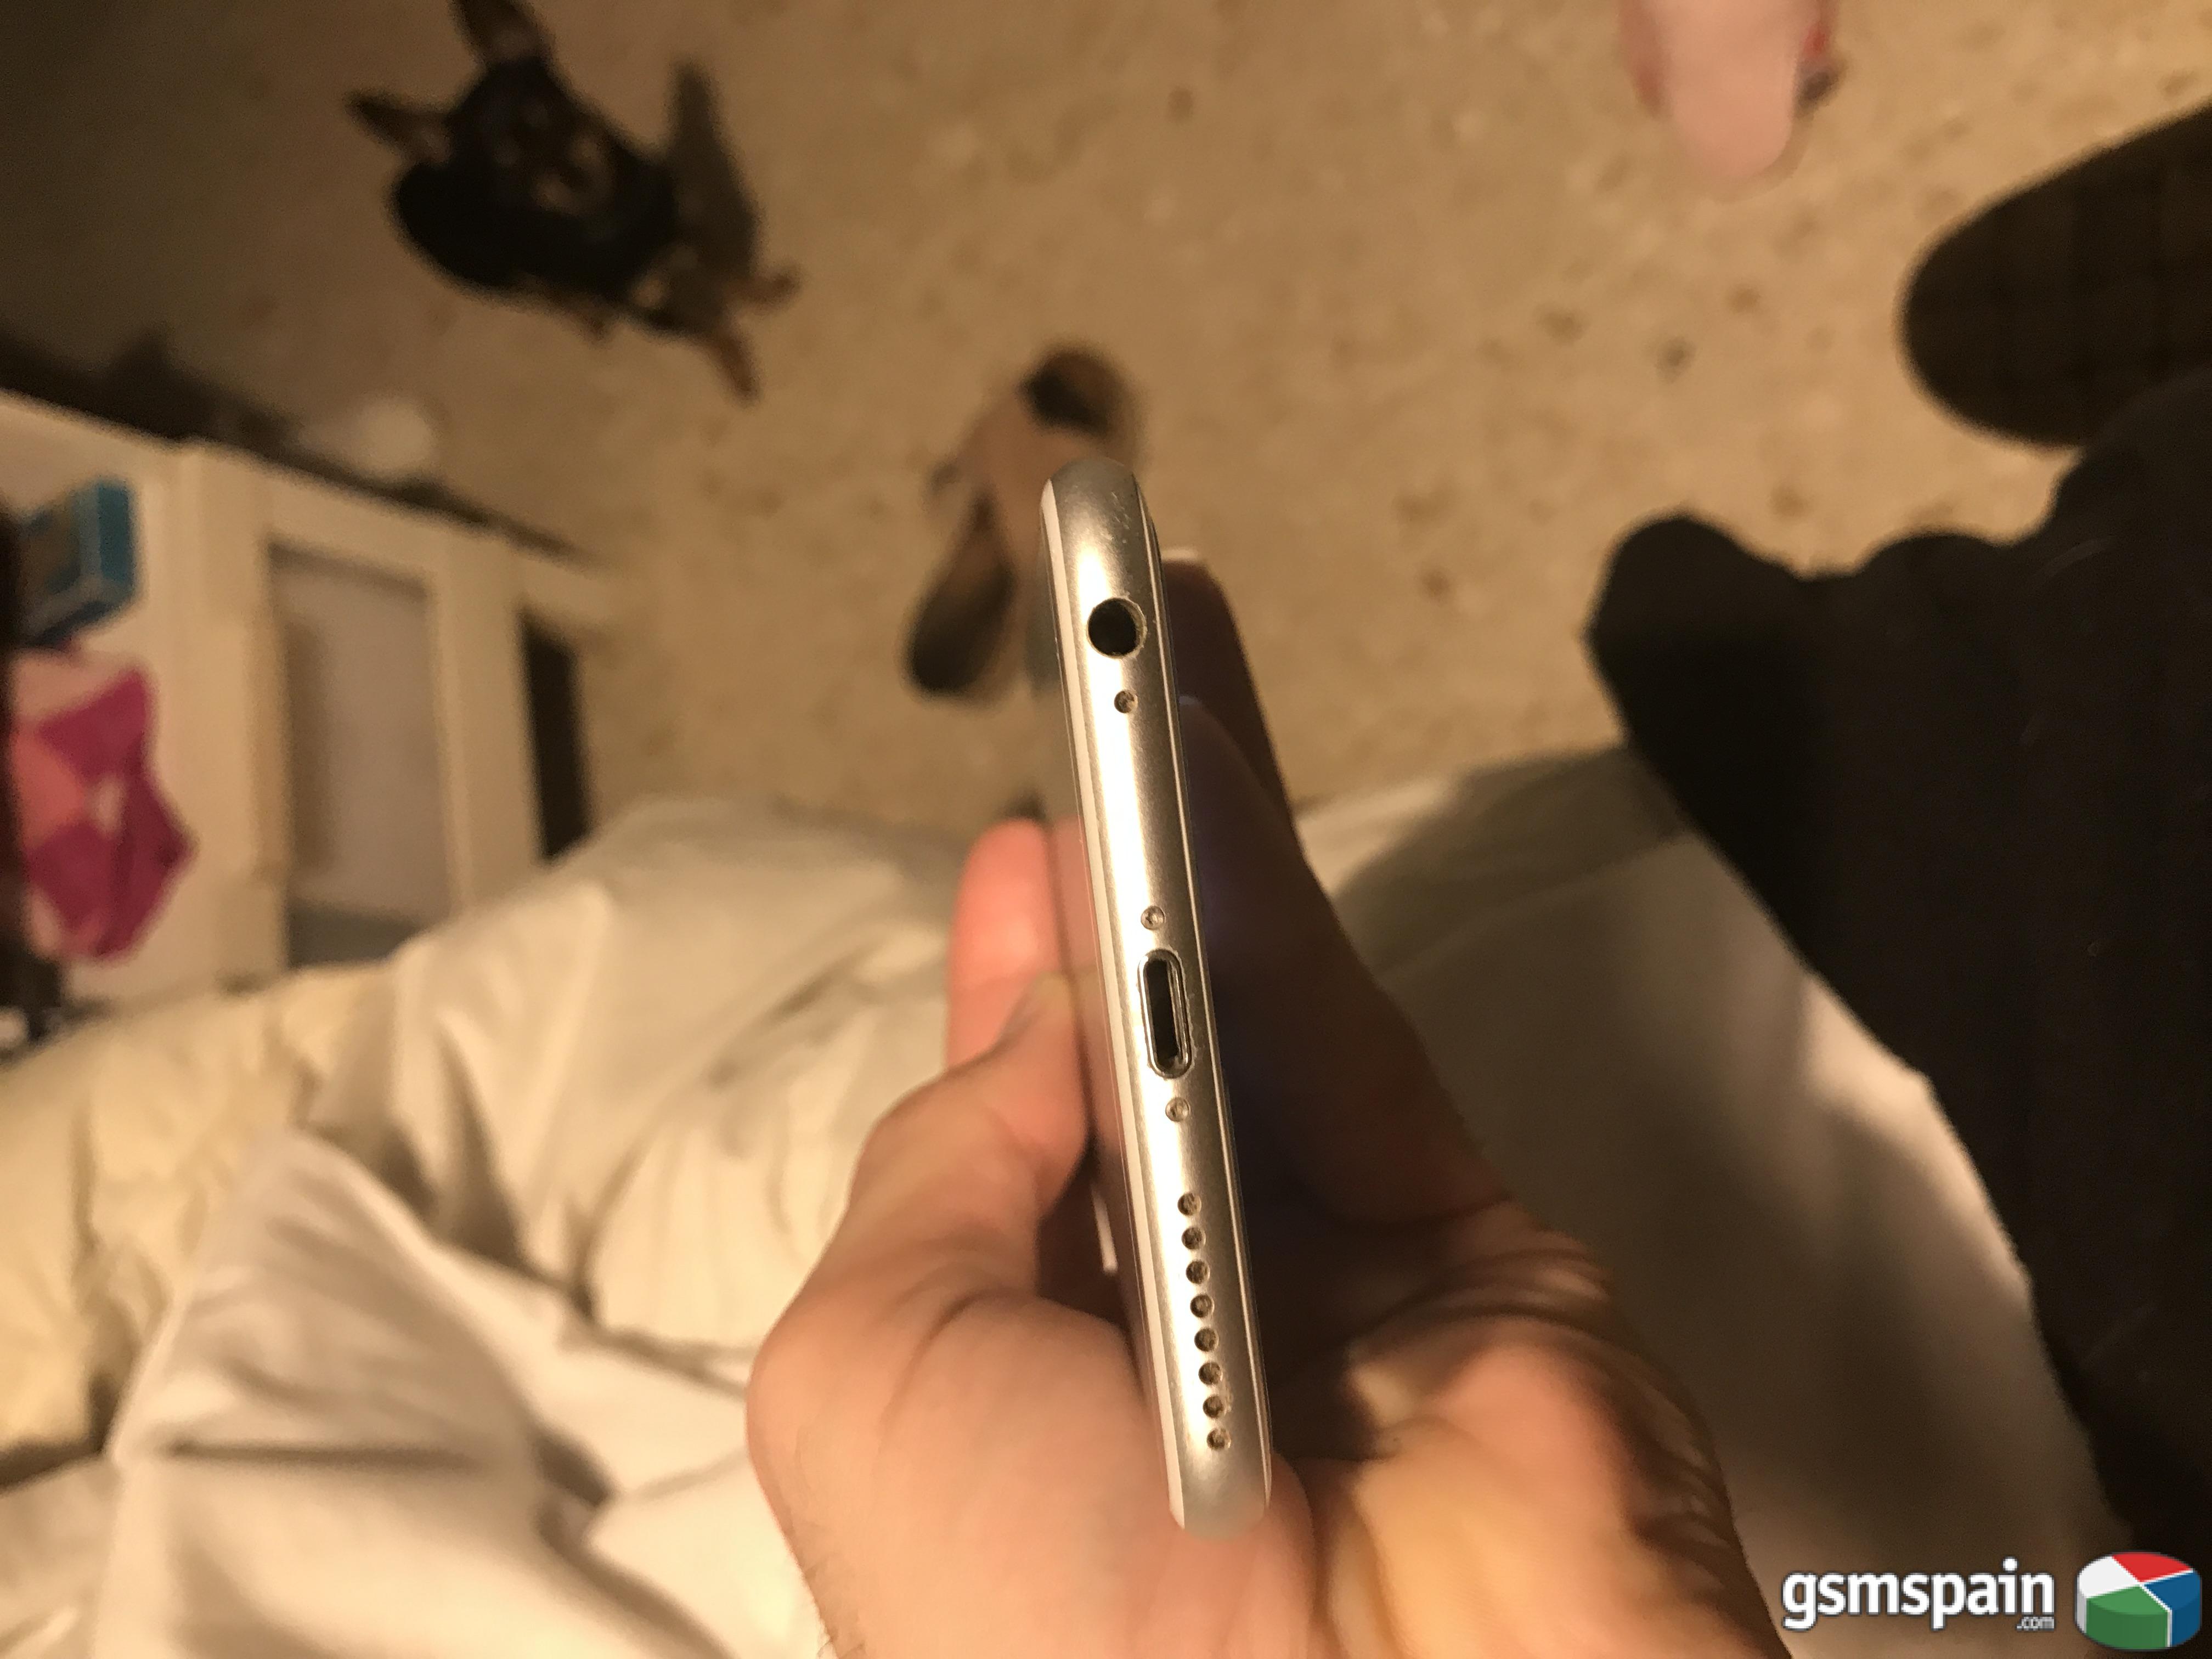 [VENDO] Iphone 6s plus 64gb plata libre de fabrica con dos fundas,accesorios a estrenar 400